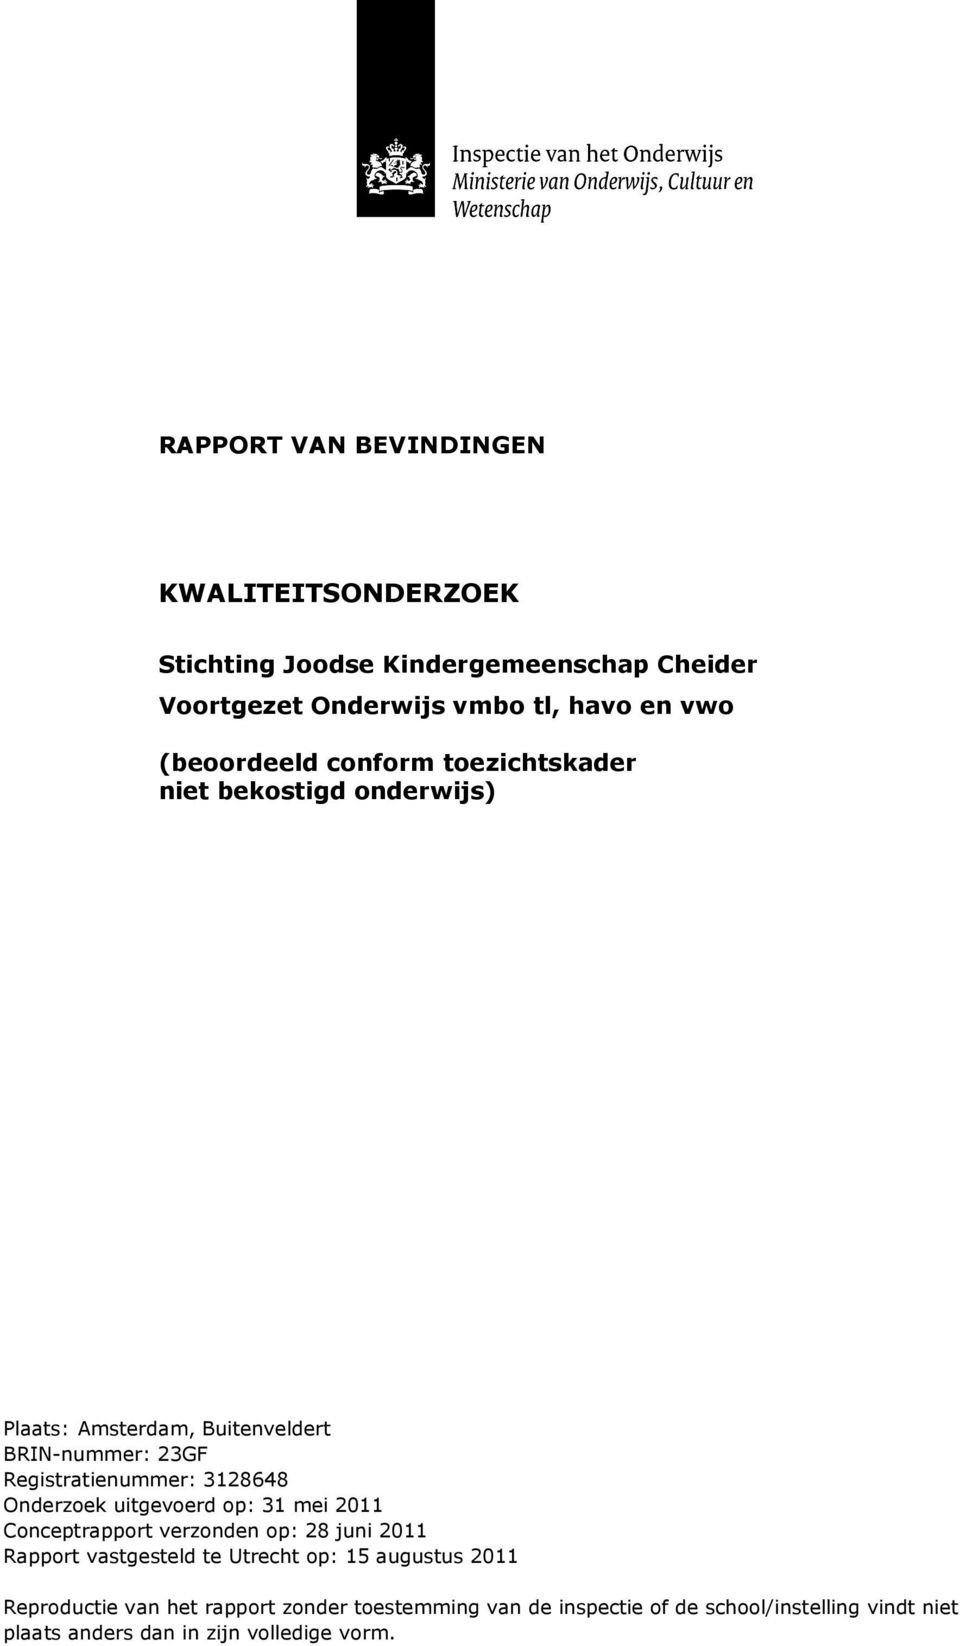 3128648 Onderzoek uitgevoerd op: 31 mei 2011 Conceptrapport verzonden op: 28 juni 2011 Rapport vastgesteld te Utrecht op: 15 augustus